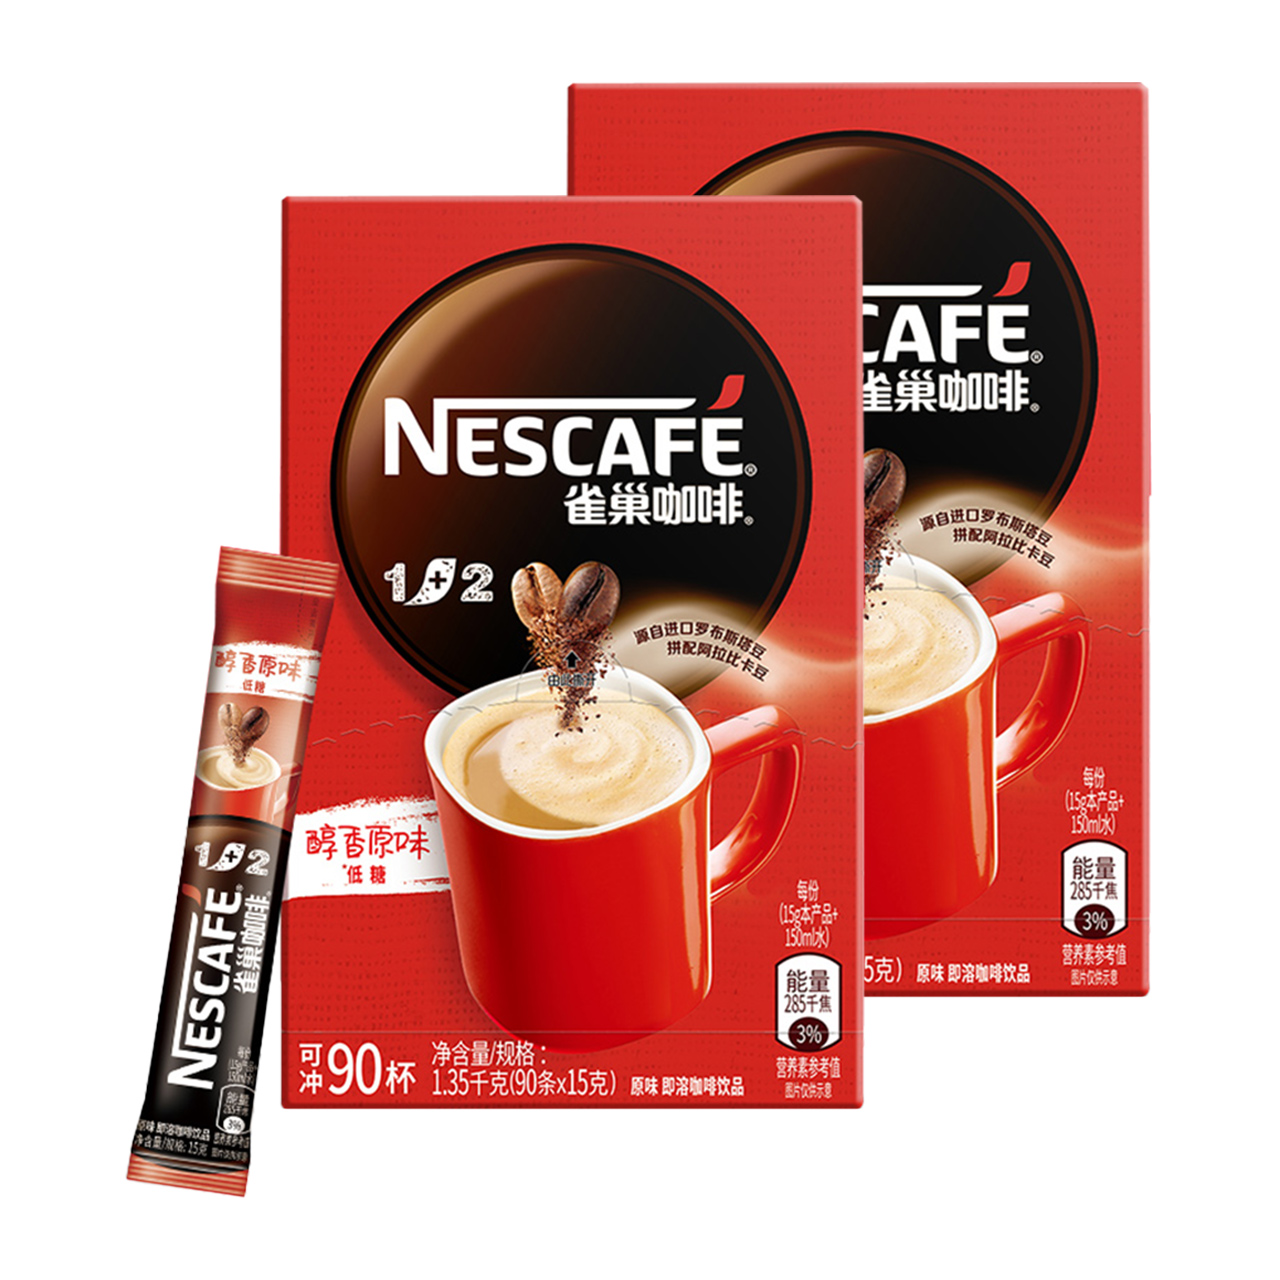 Nestlé 雀巢 咖啡1+2三合一醇香原味速溶咖啡90条*2盒低糖健康无负担奶咖 169.1